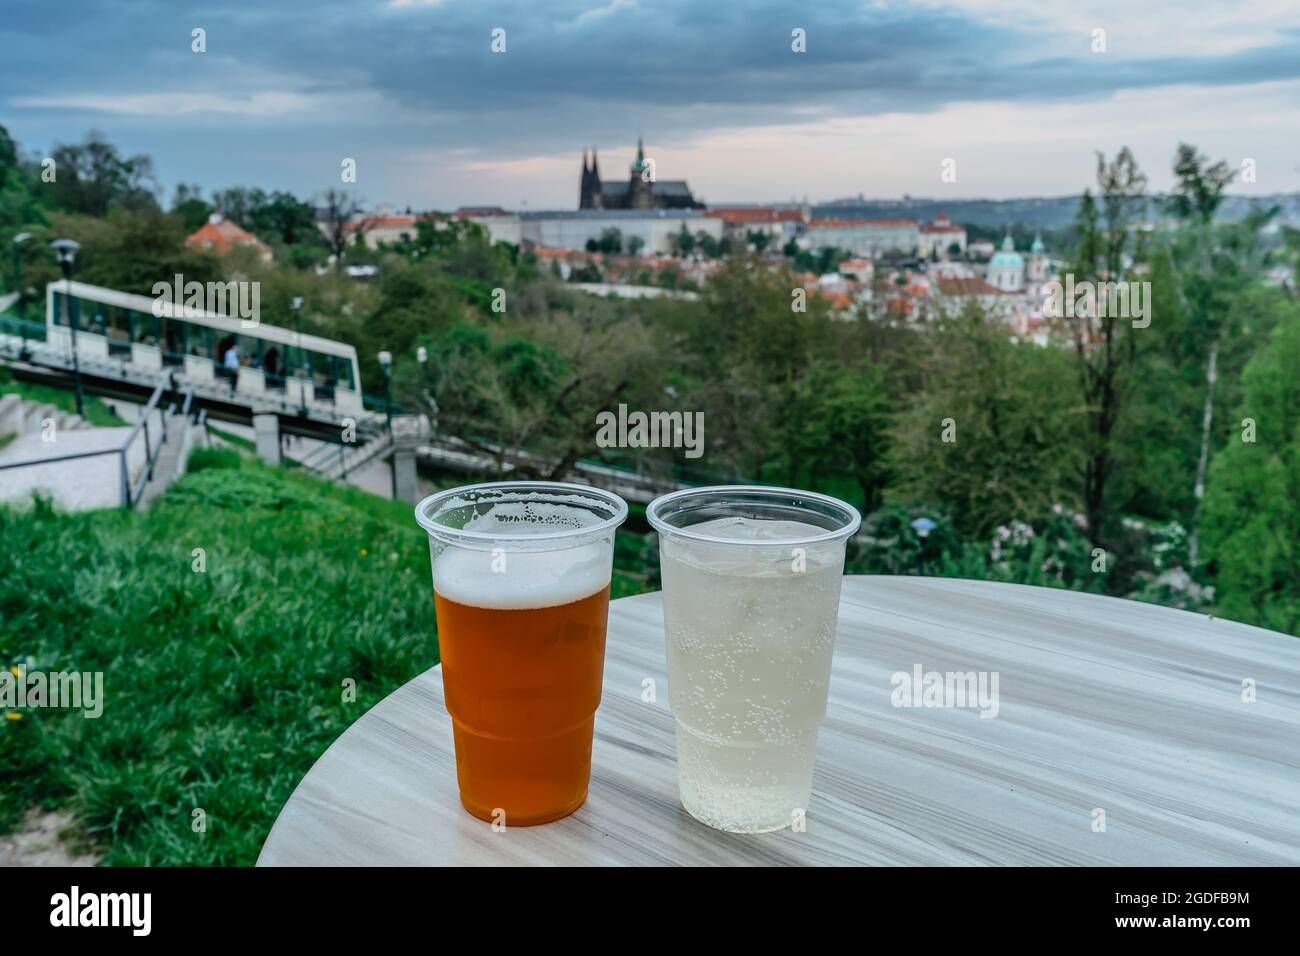 Cerveza de barril tradicional checa y vino blanco en vasos de plástico, Castillo de Praga borrosa y funicular Petrin en el fondo. Refresco frío Foto de stock